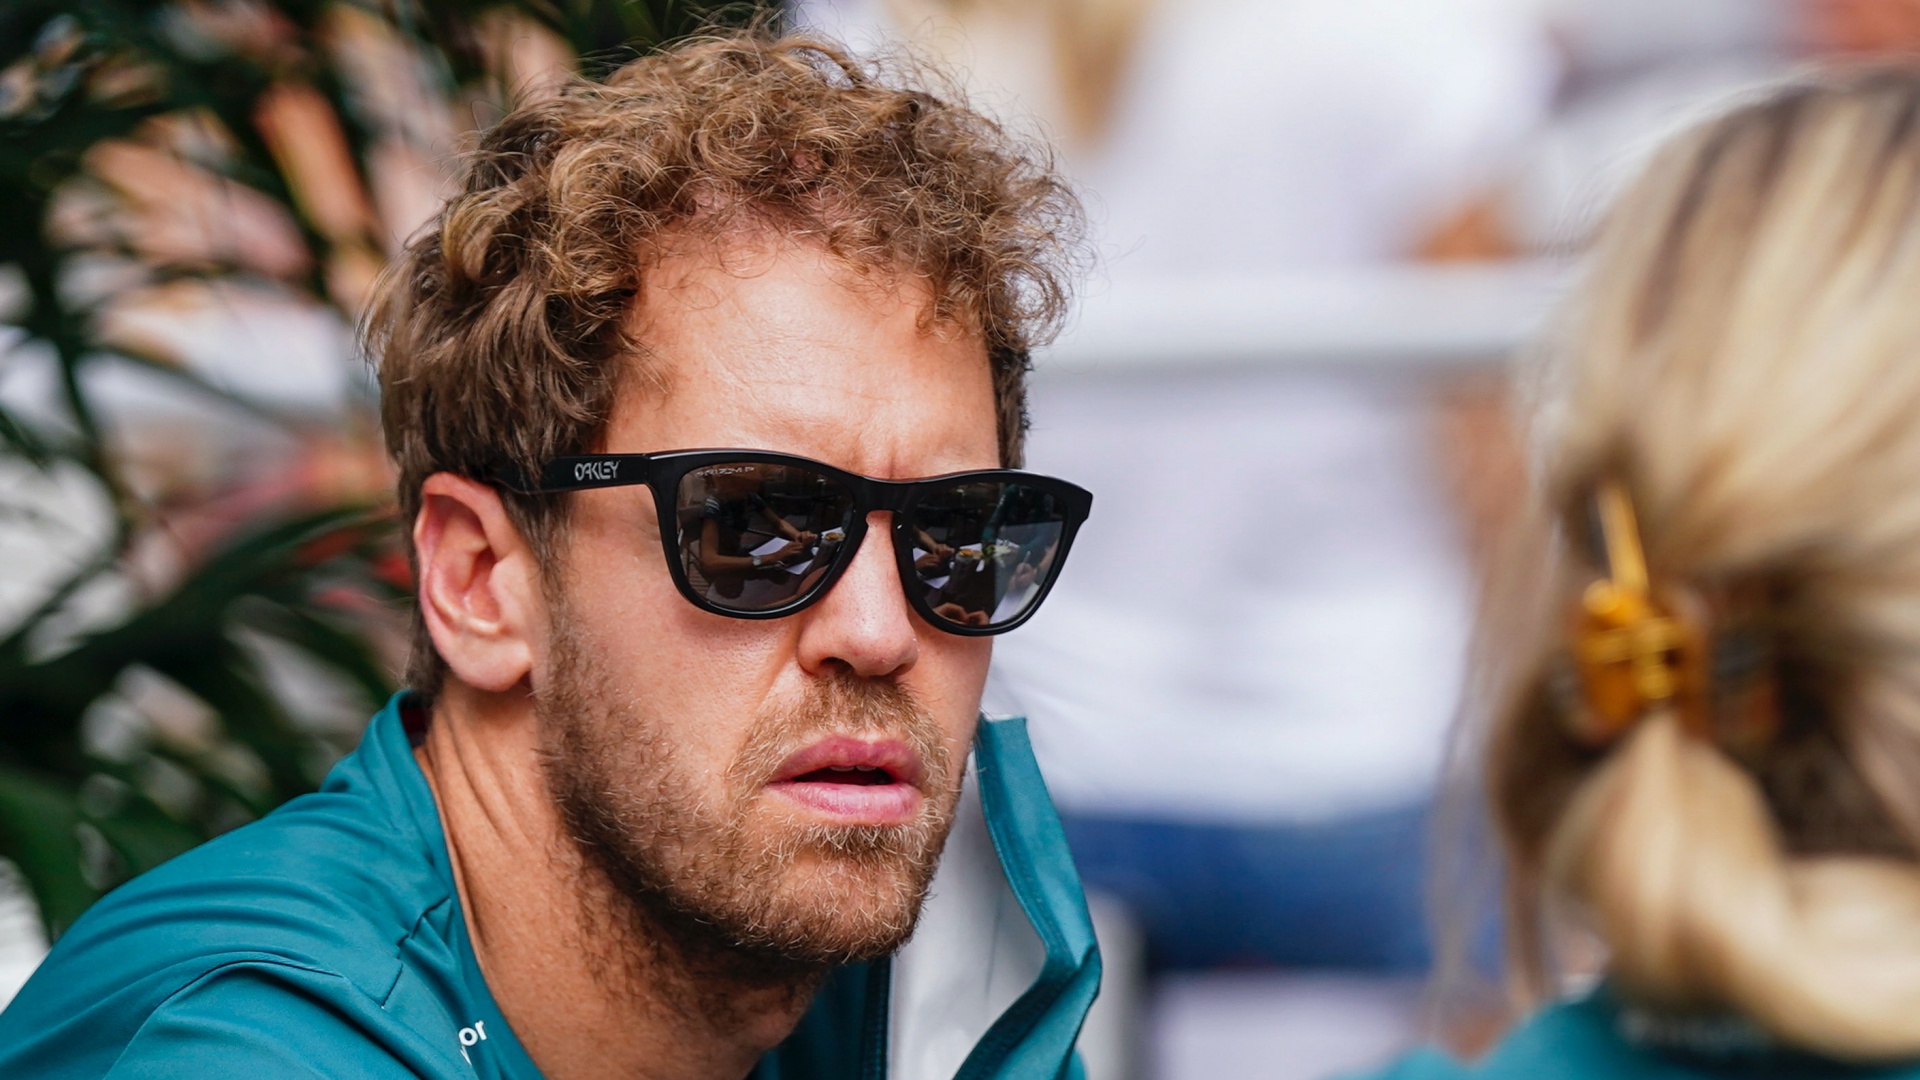 Sebastian Vettel, az Aston Martin német versenyzõje a Forma-1-es autós gyorsasági világbajnokság austini futamának, az Egyesült Államok Nagydíjának helyszínén, a Circuit of The Americas pályán 2021. október 21-én.